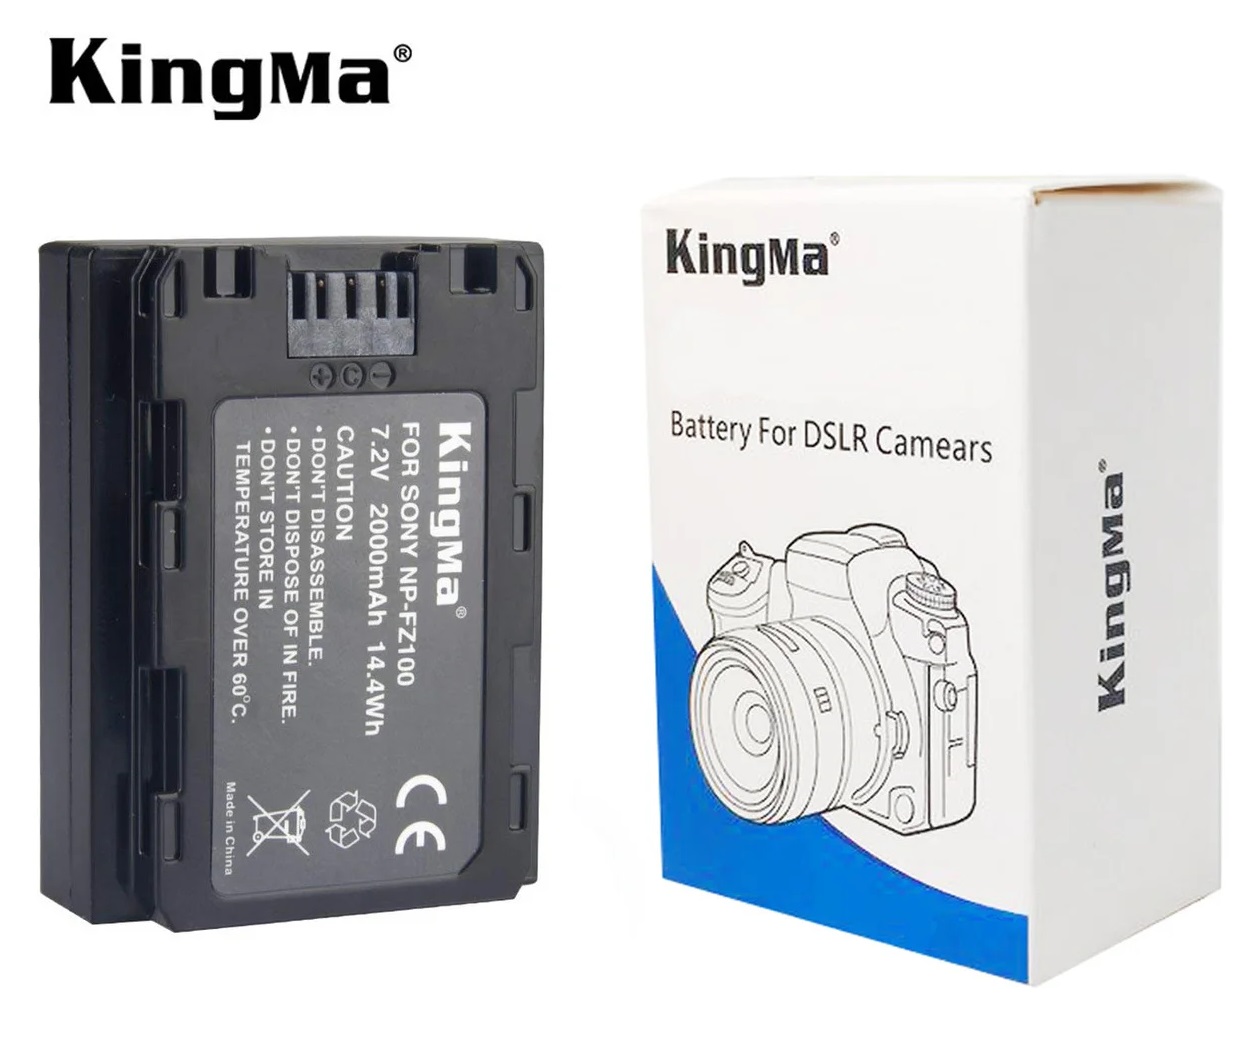 Pin máy ảnh KingMa NP-FZ100 - Hàng chính hãng